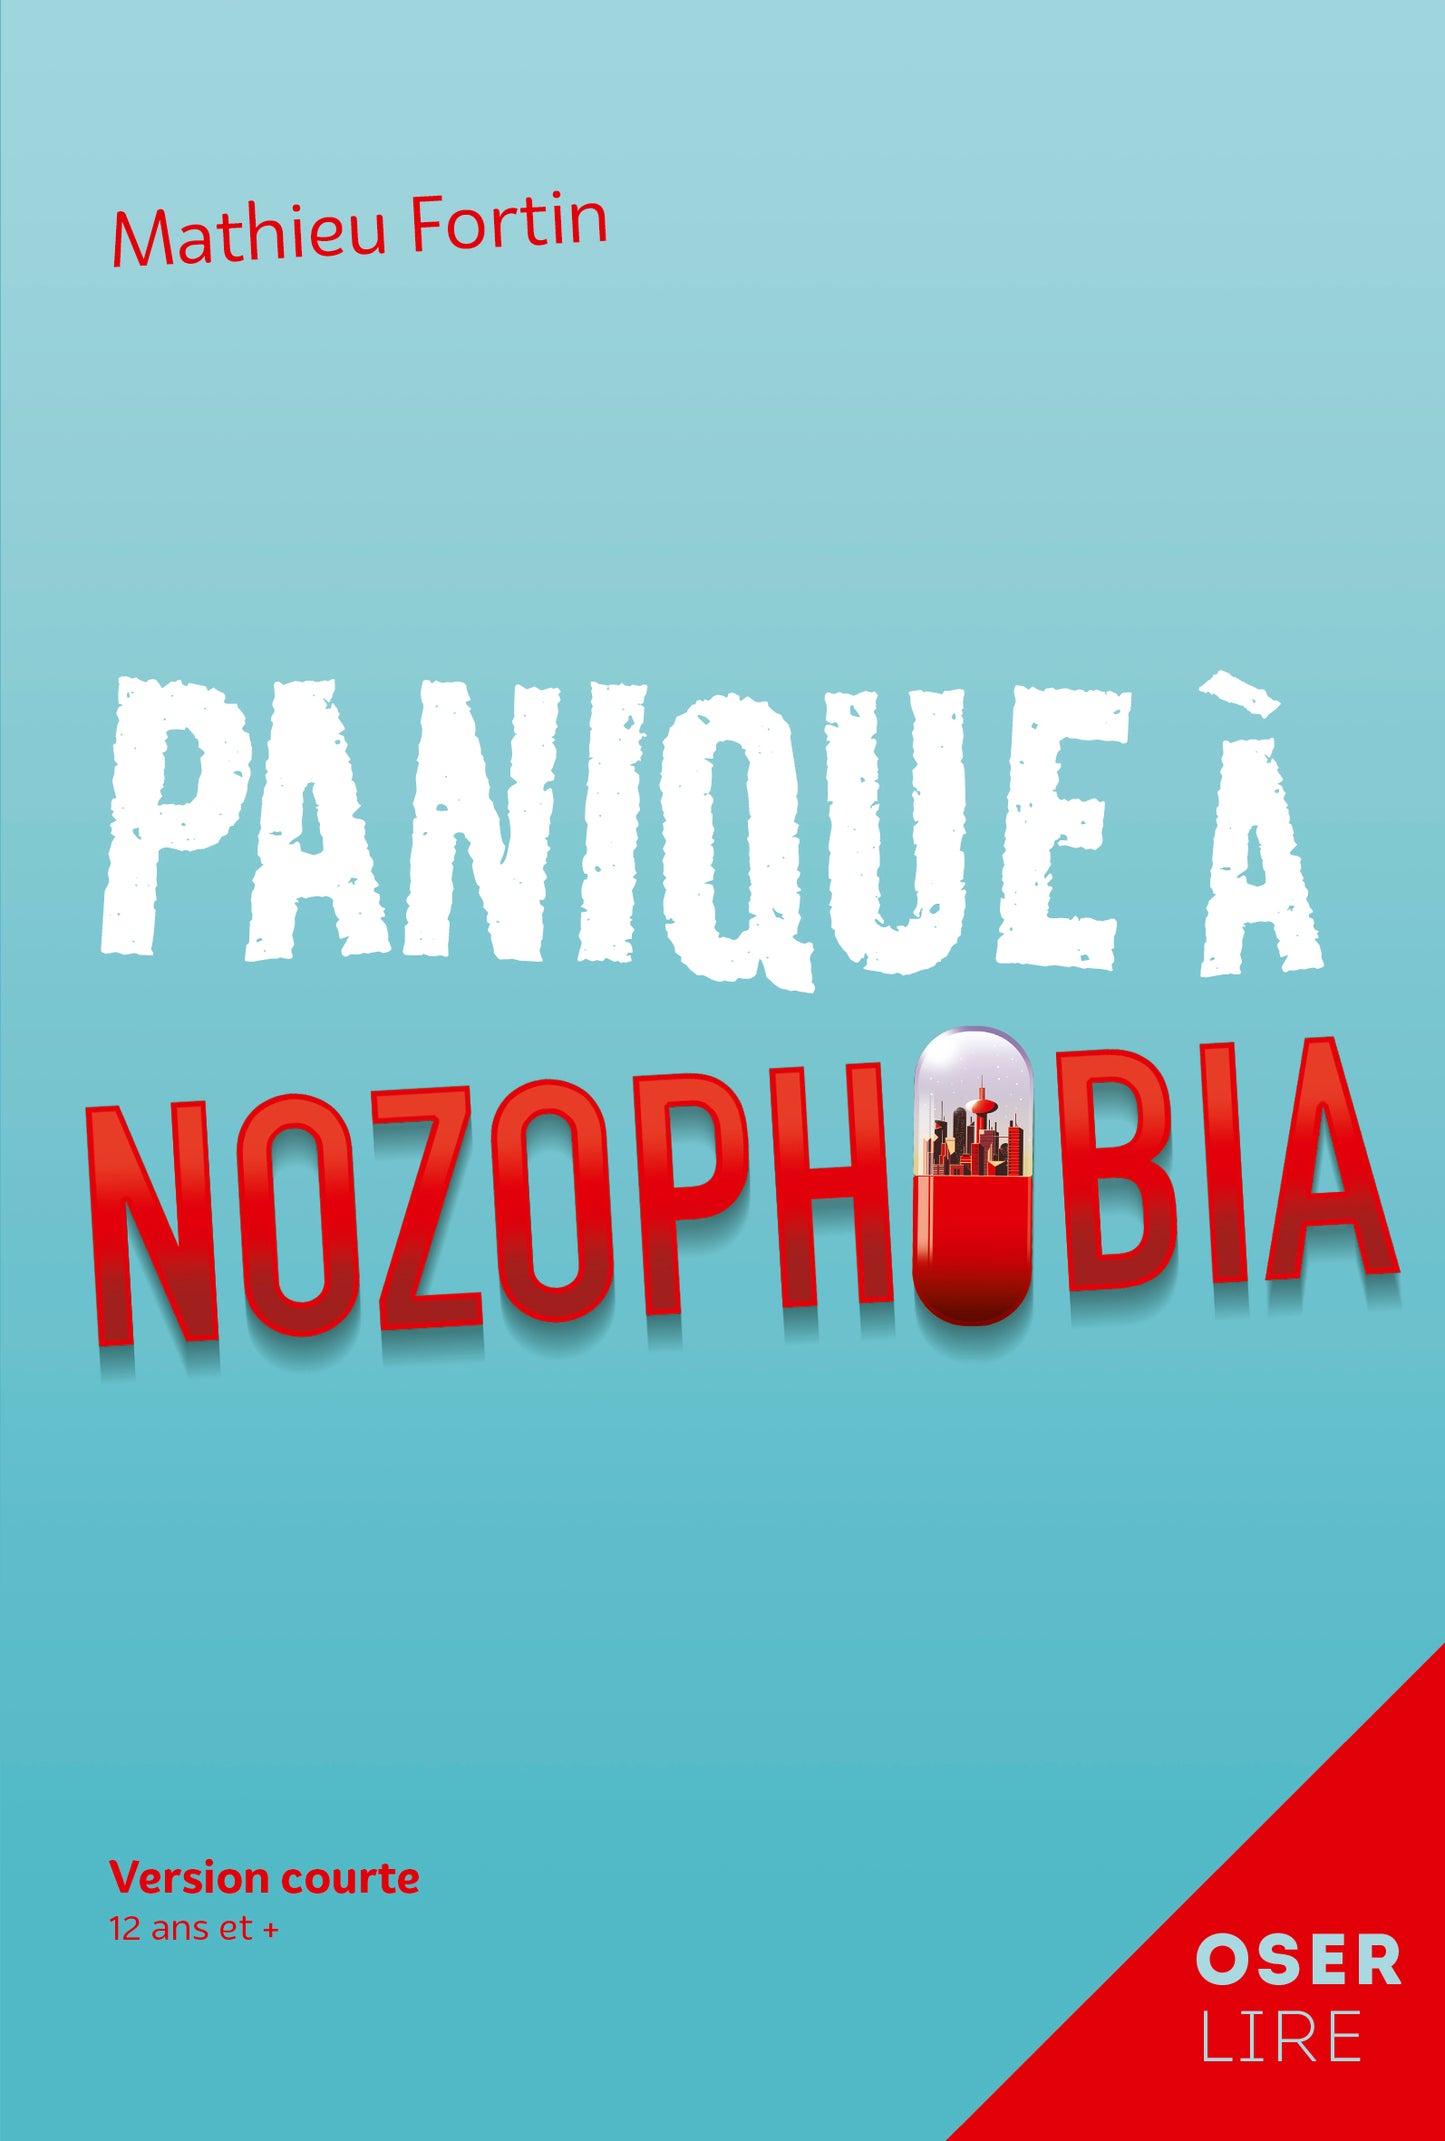 Panique à Nozophobia (ePub numérique)